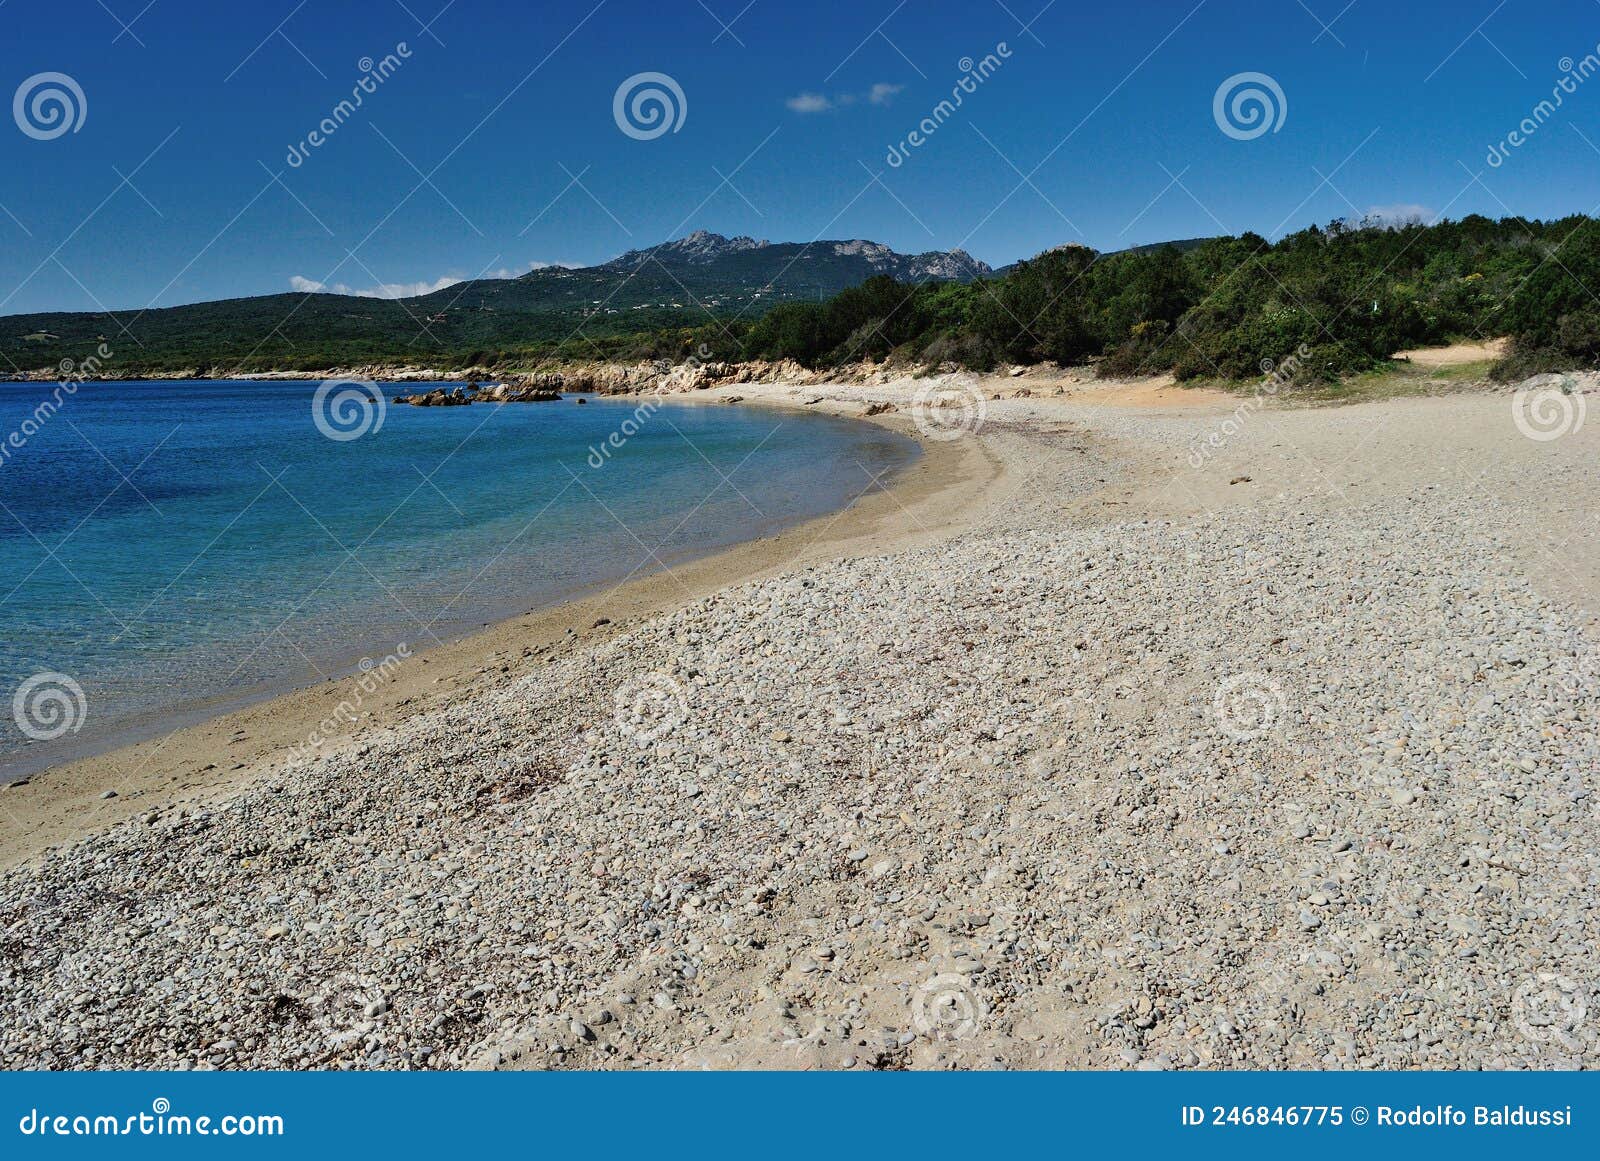 view of razza di junco beach, costa smeralda